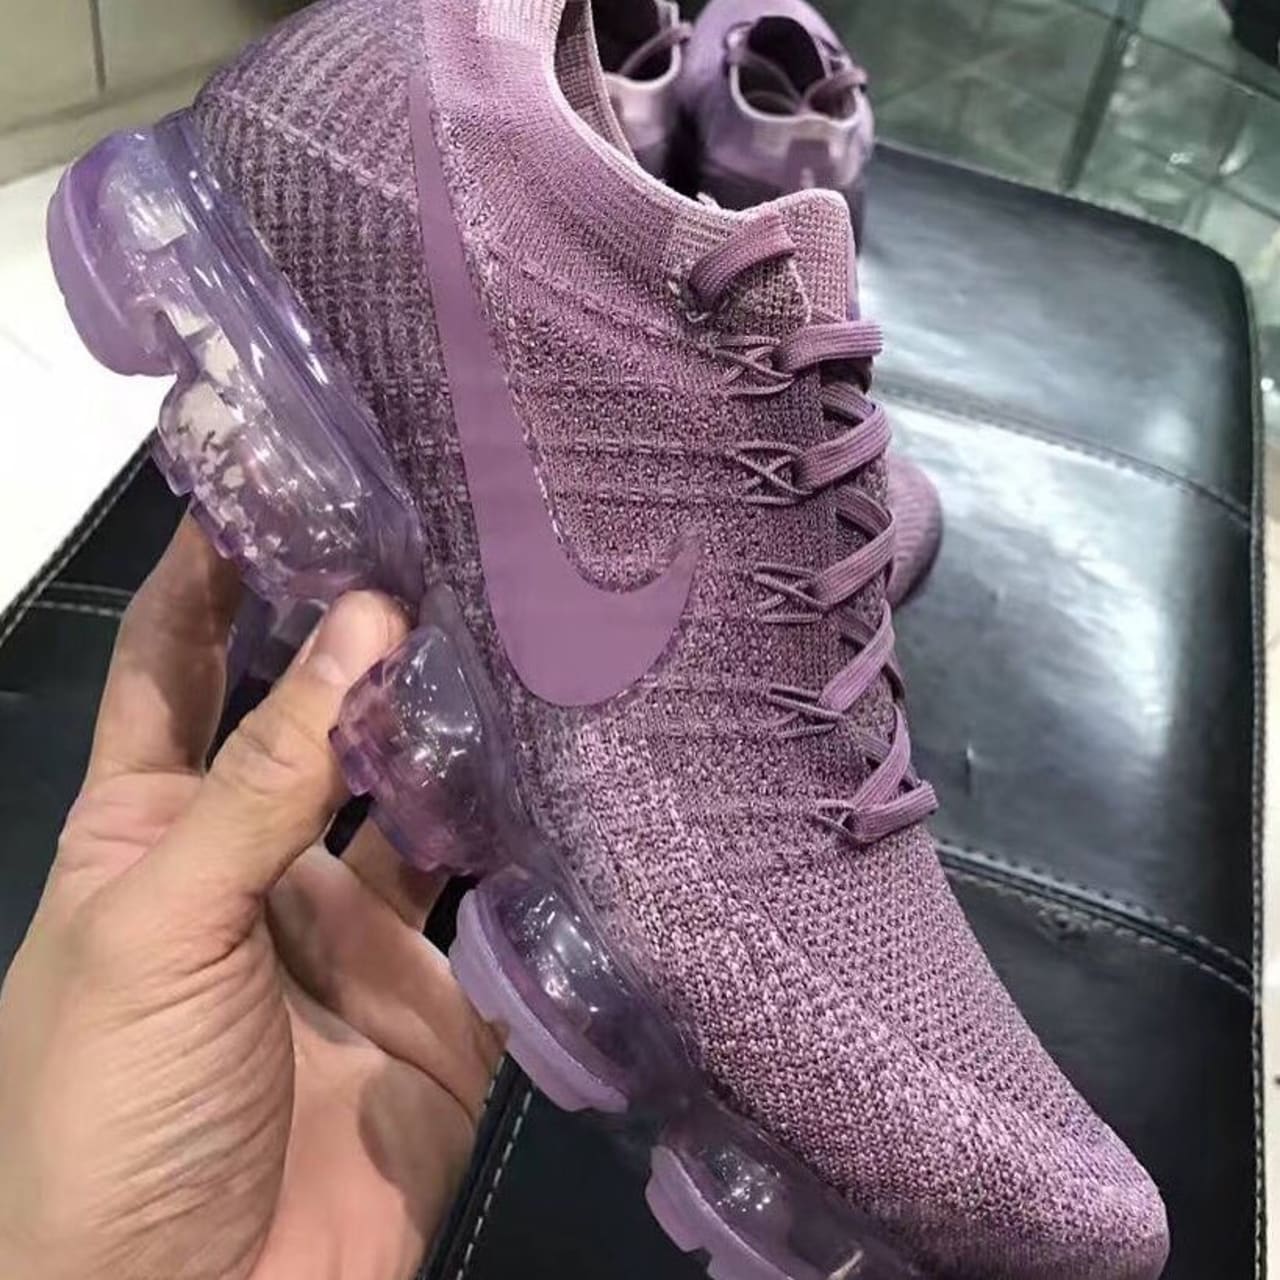 the purple vapormax shoes